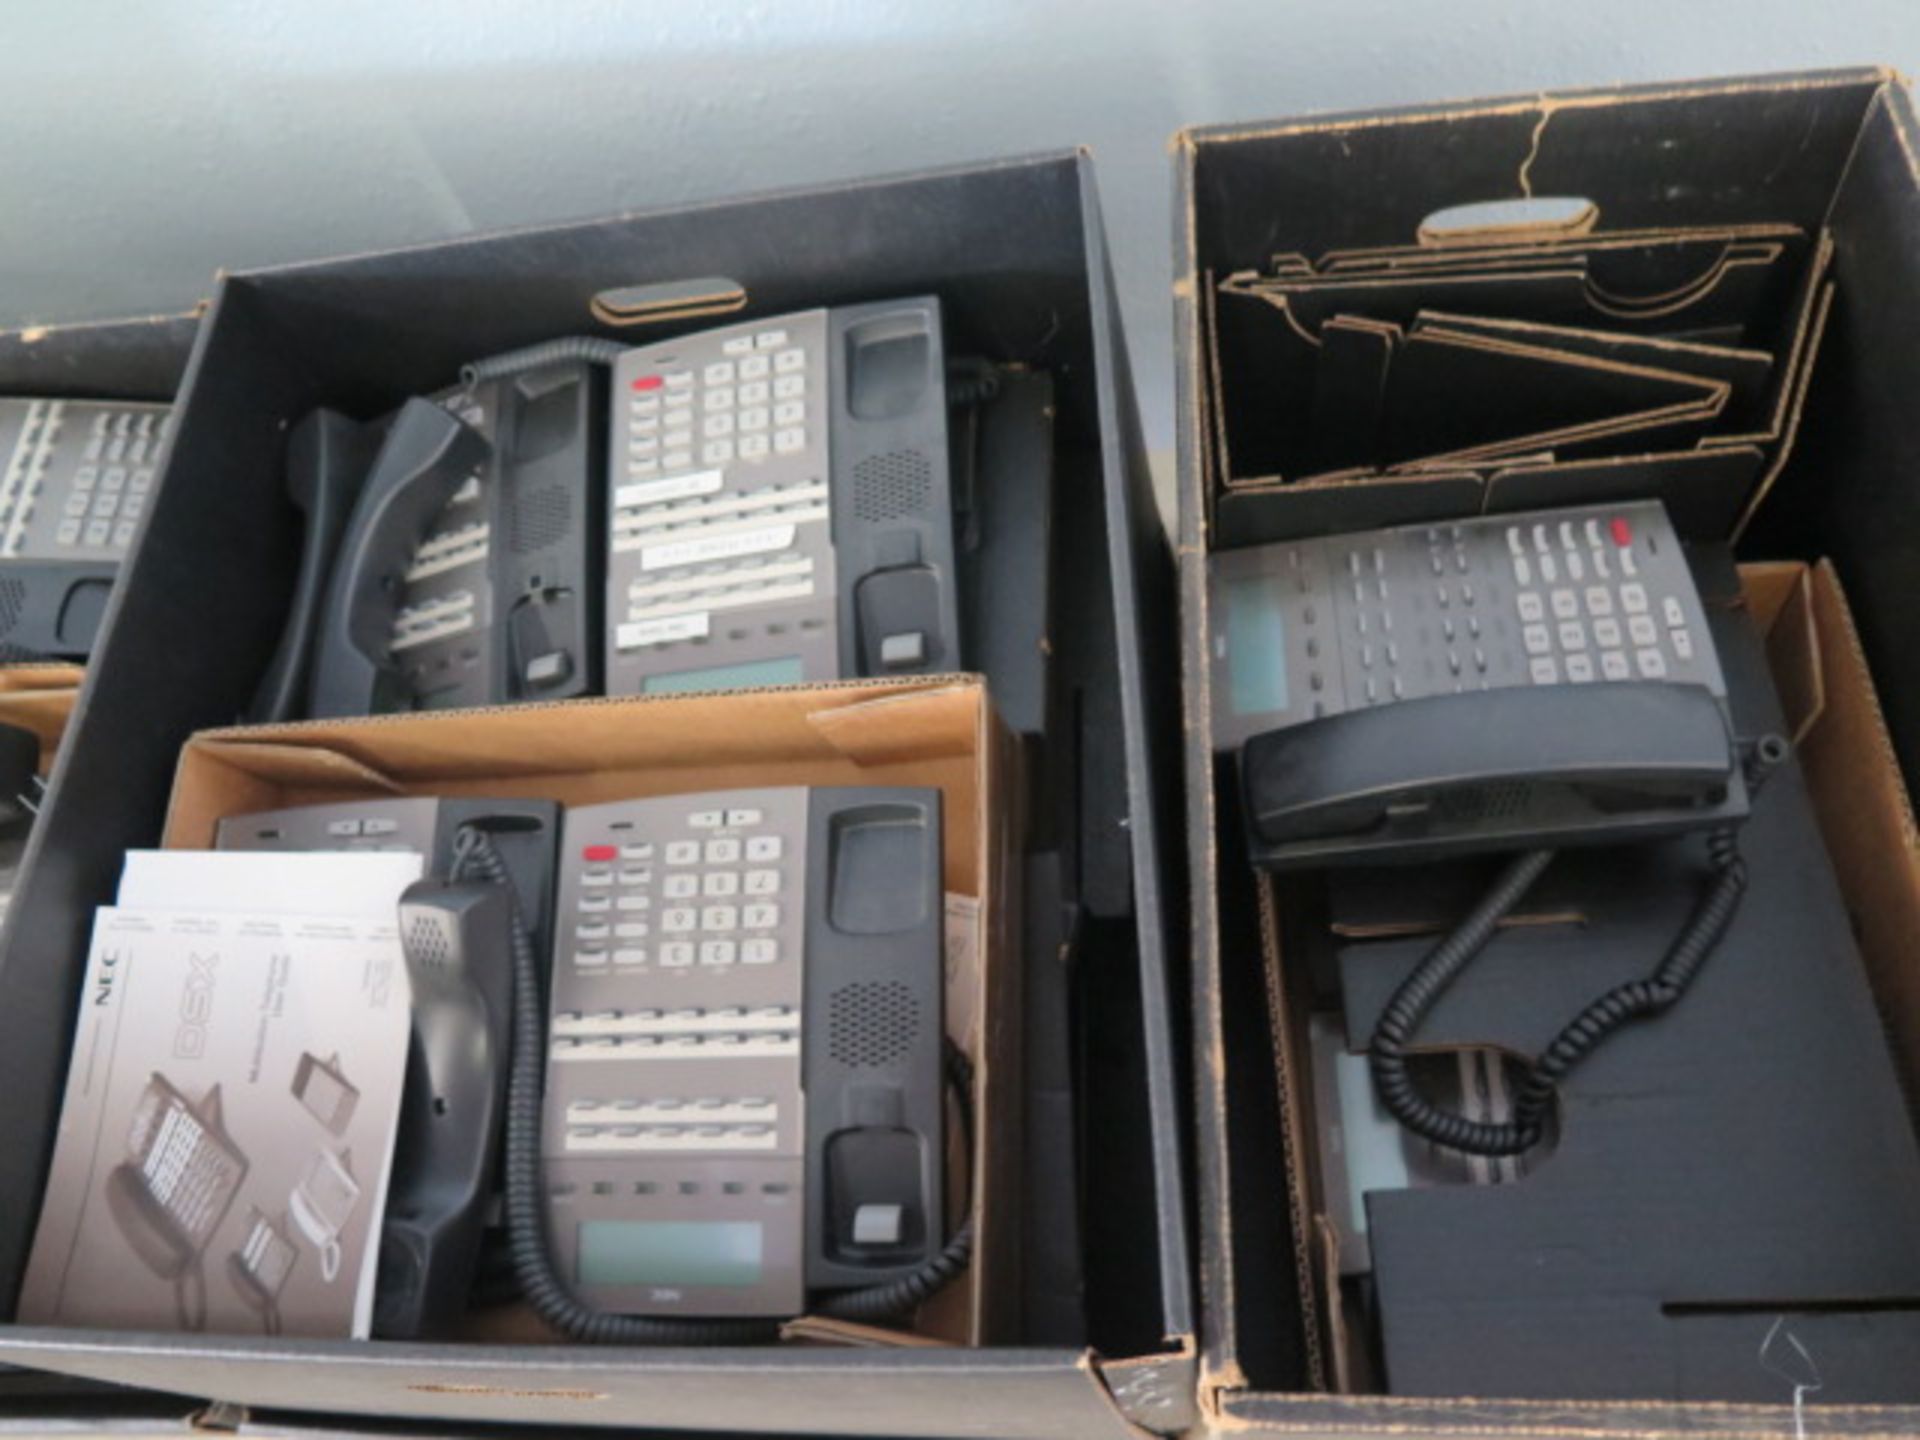 NEC DSX-80 Phone System w/ Phones - Bild 5 aus 6